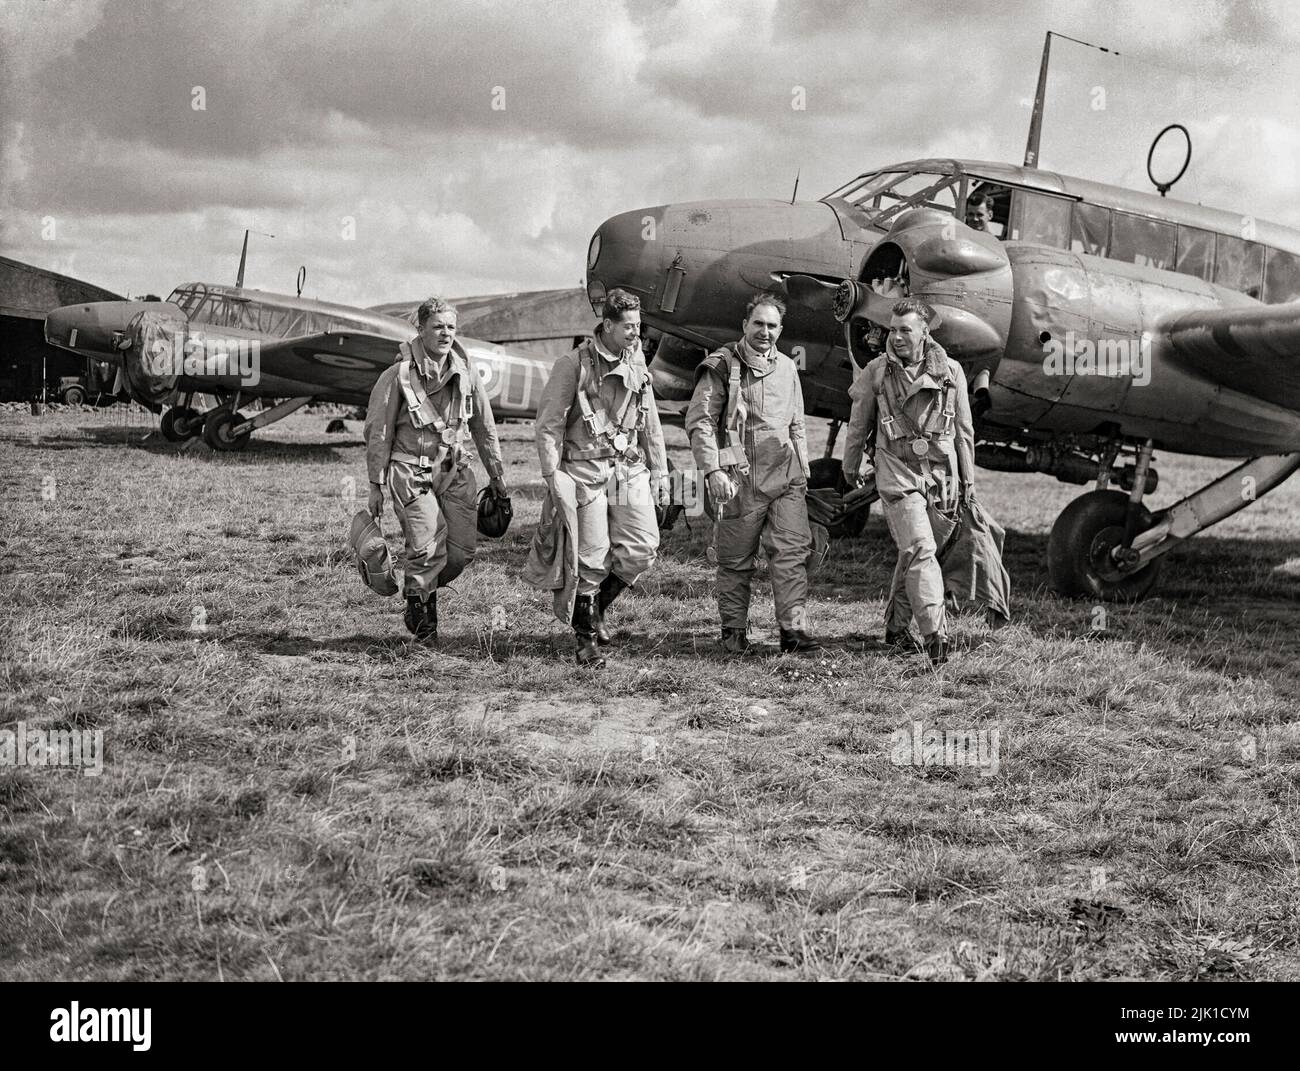 Piloten der RAF-Staffel Nr. 320 oder 321 (holländisch) laufen zu ihrem Avro Anson Mark ist in Carew Cheriton, Pembrokeshire. Beide Geschwader wurden am 1. Juni 1940 aus Mitgliedern des Royal Netherlands Naval Air Service gebildet, die nach der Invasion Hollands nach Großbritannien geflohen waren. Es war ein britisches zweimotoriges, mehrreihiges Flugzeug, hauptsächlich Aufklärungsflugzeug, das vor, während und nach dem Zweiten Weltkrieg bei der Royal Air Force (RAF), Fleet Air Arm (FAA), der Royal Canadian Air Force (RCAF) und anderen Luftstreitkräften diente. Stockfoto